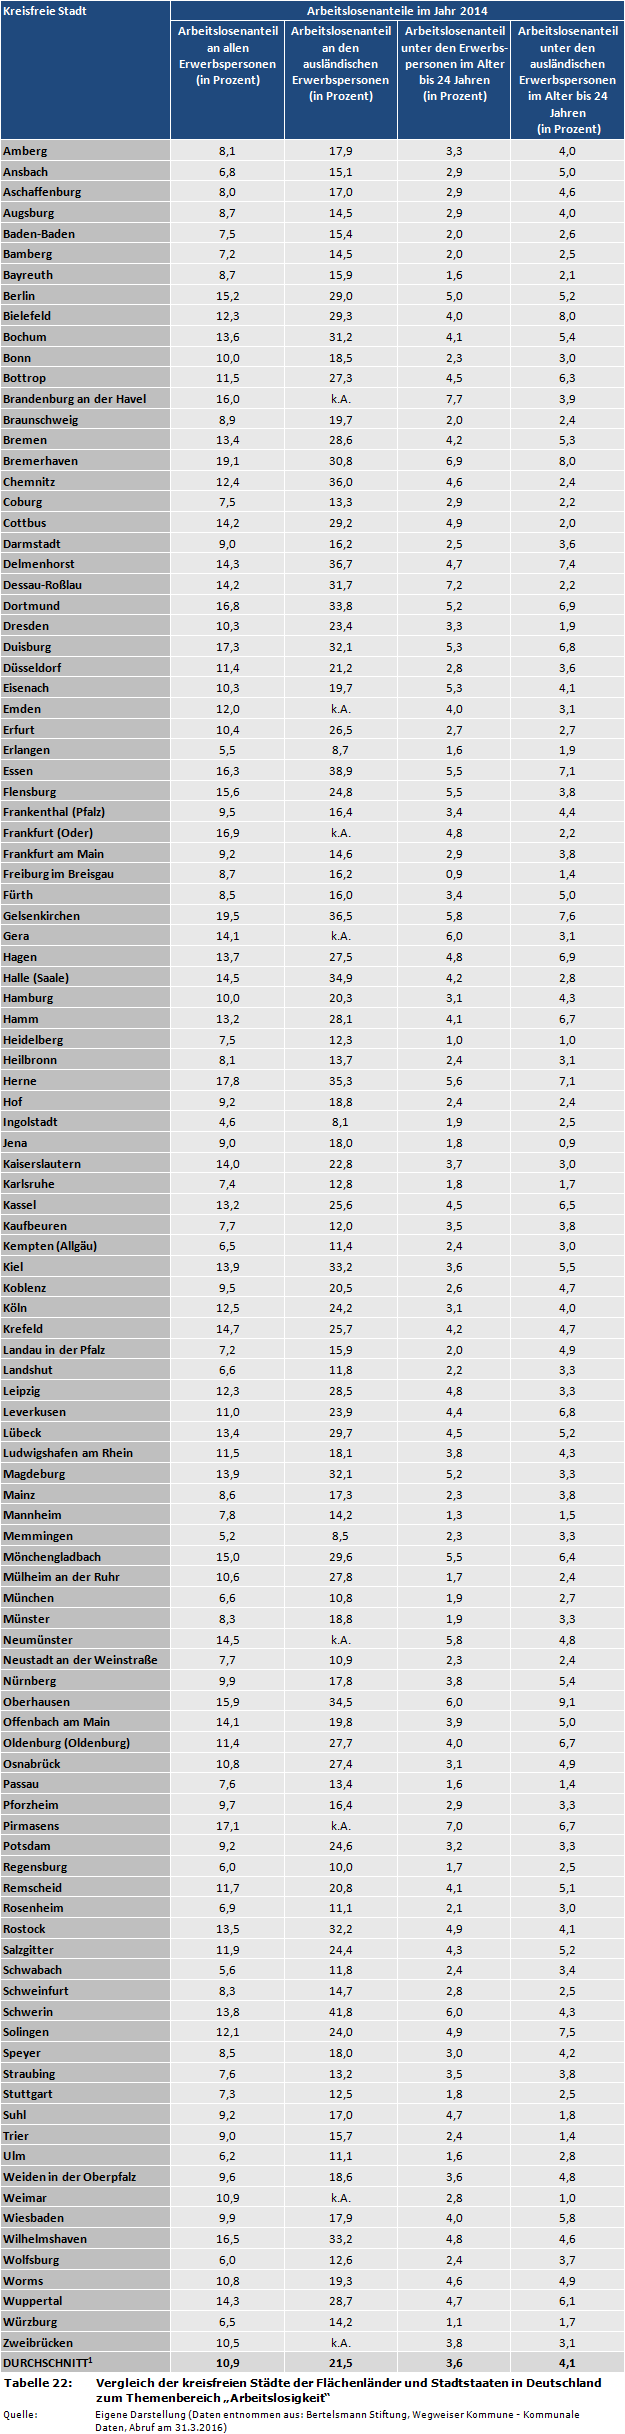 Vergleich der kreisfreien Städte der Flächenländer und Stadtstaaten in Deutschland zum Themenbereich 'Arbeitslosigkeit'